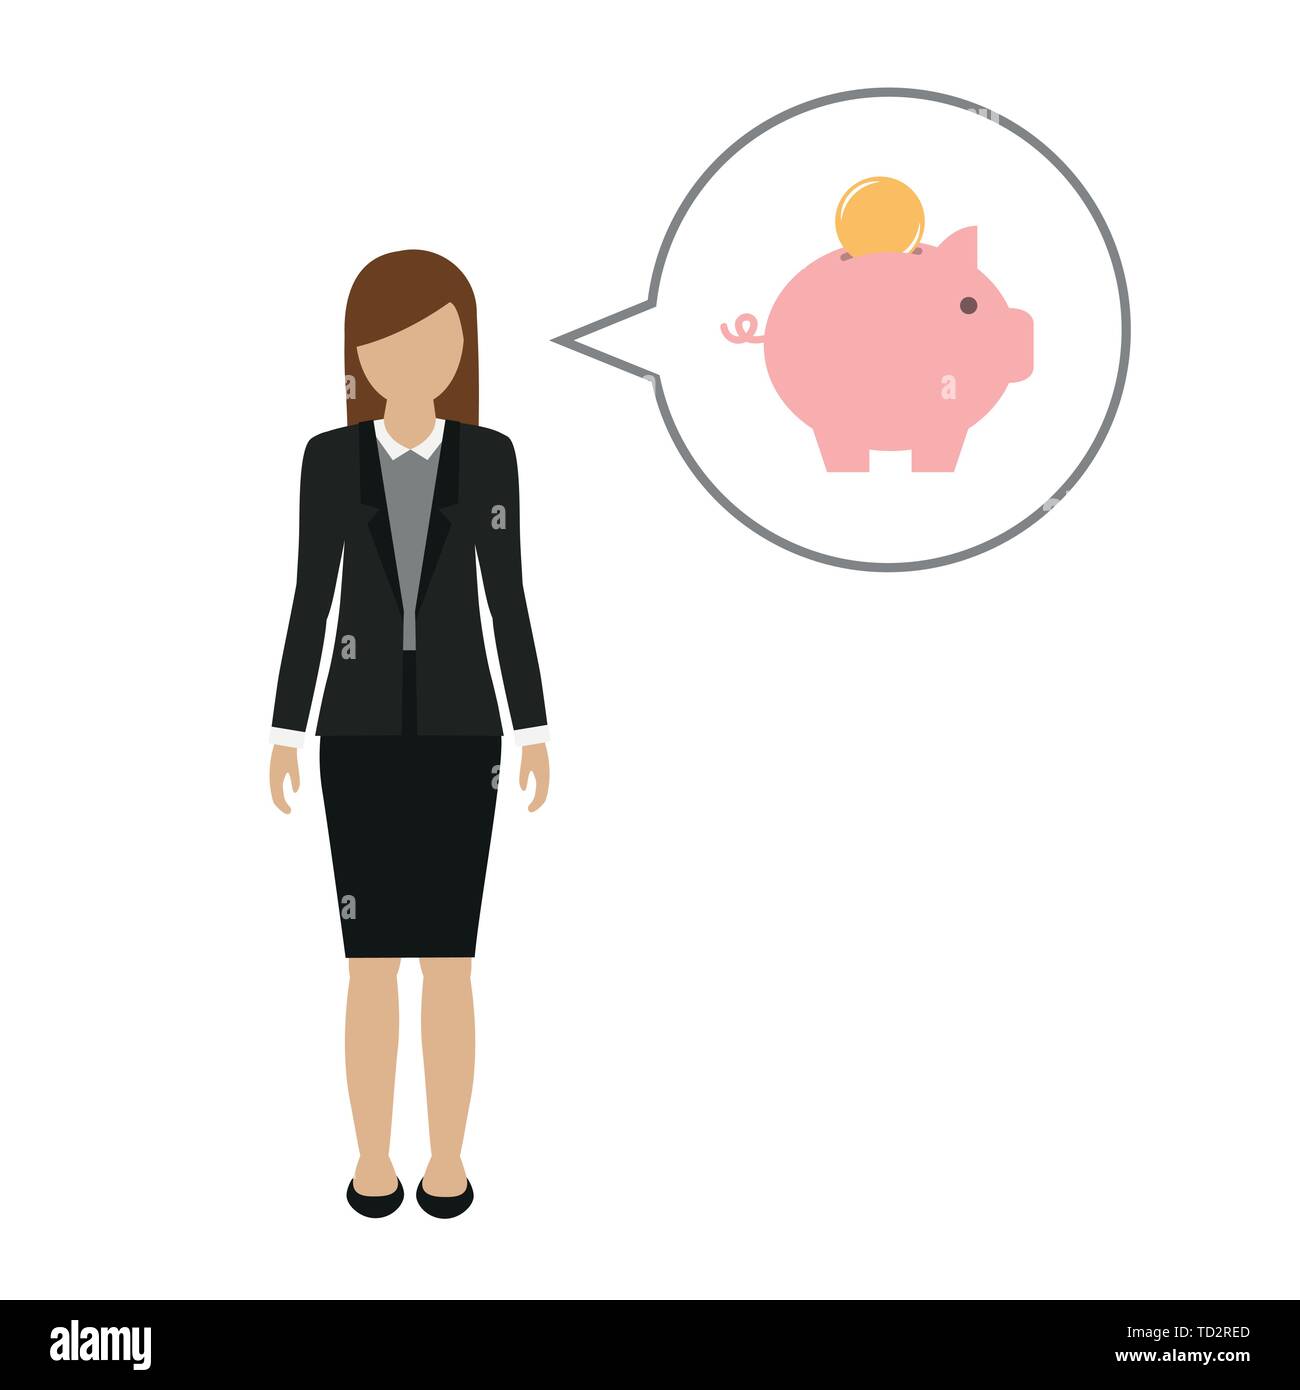 Business woman Charakter spricht über Geld sparen im Sparschwein Vektor-illustration EPS 10. Stock Vektor